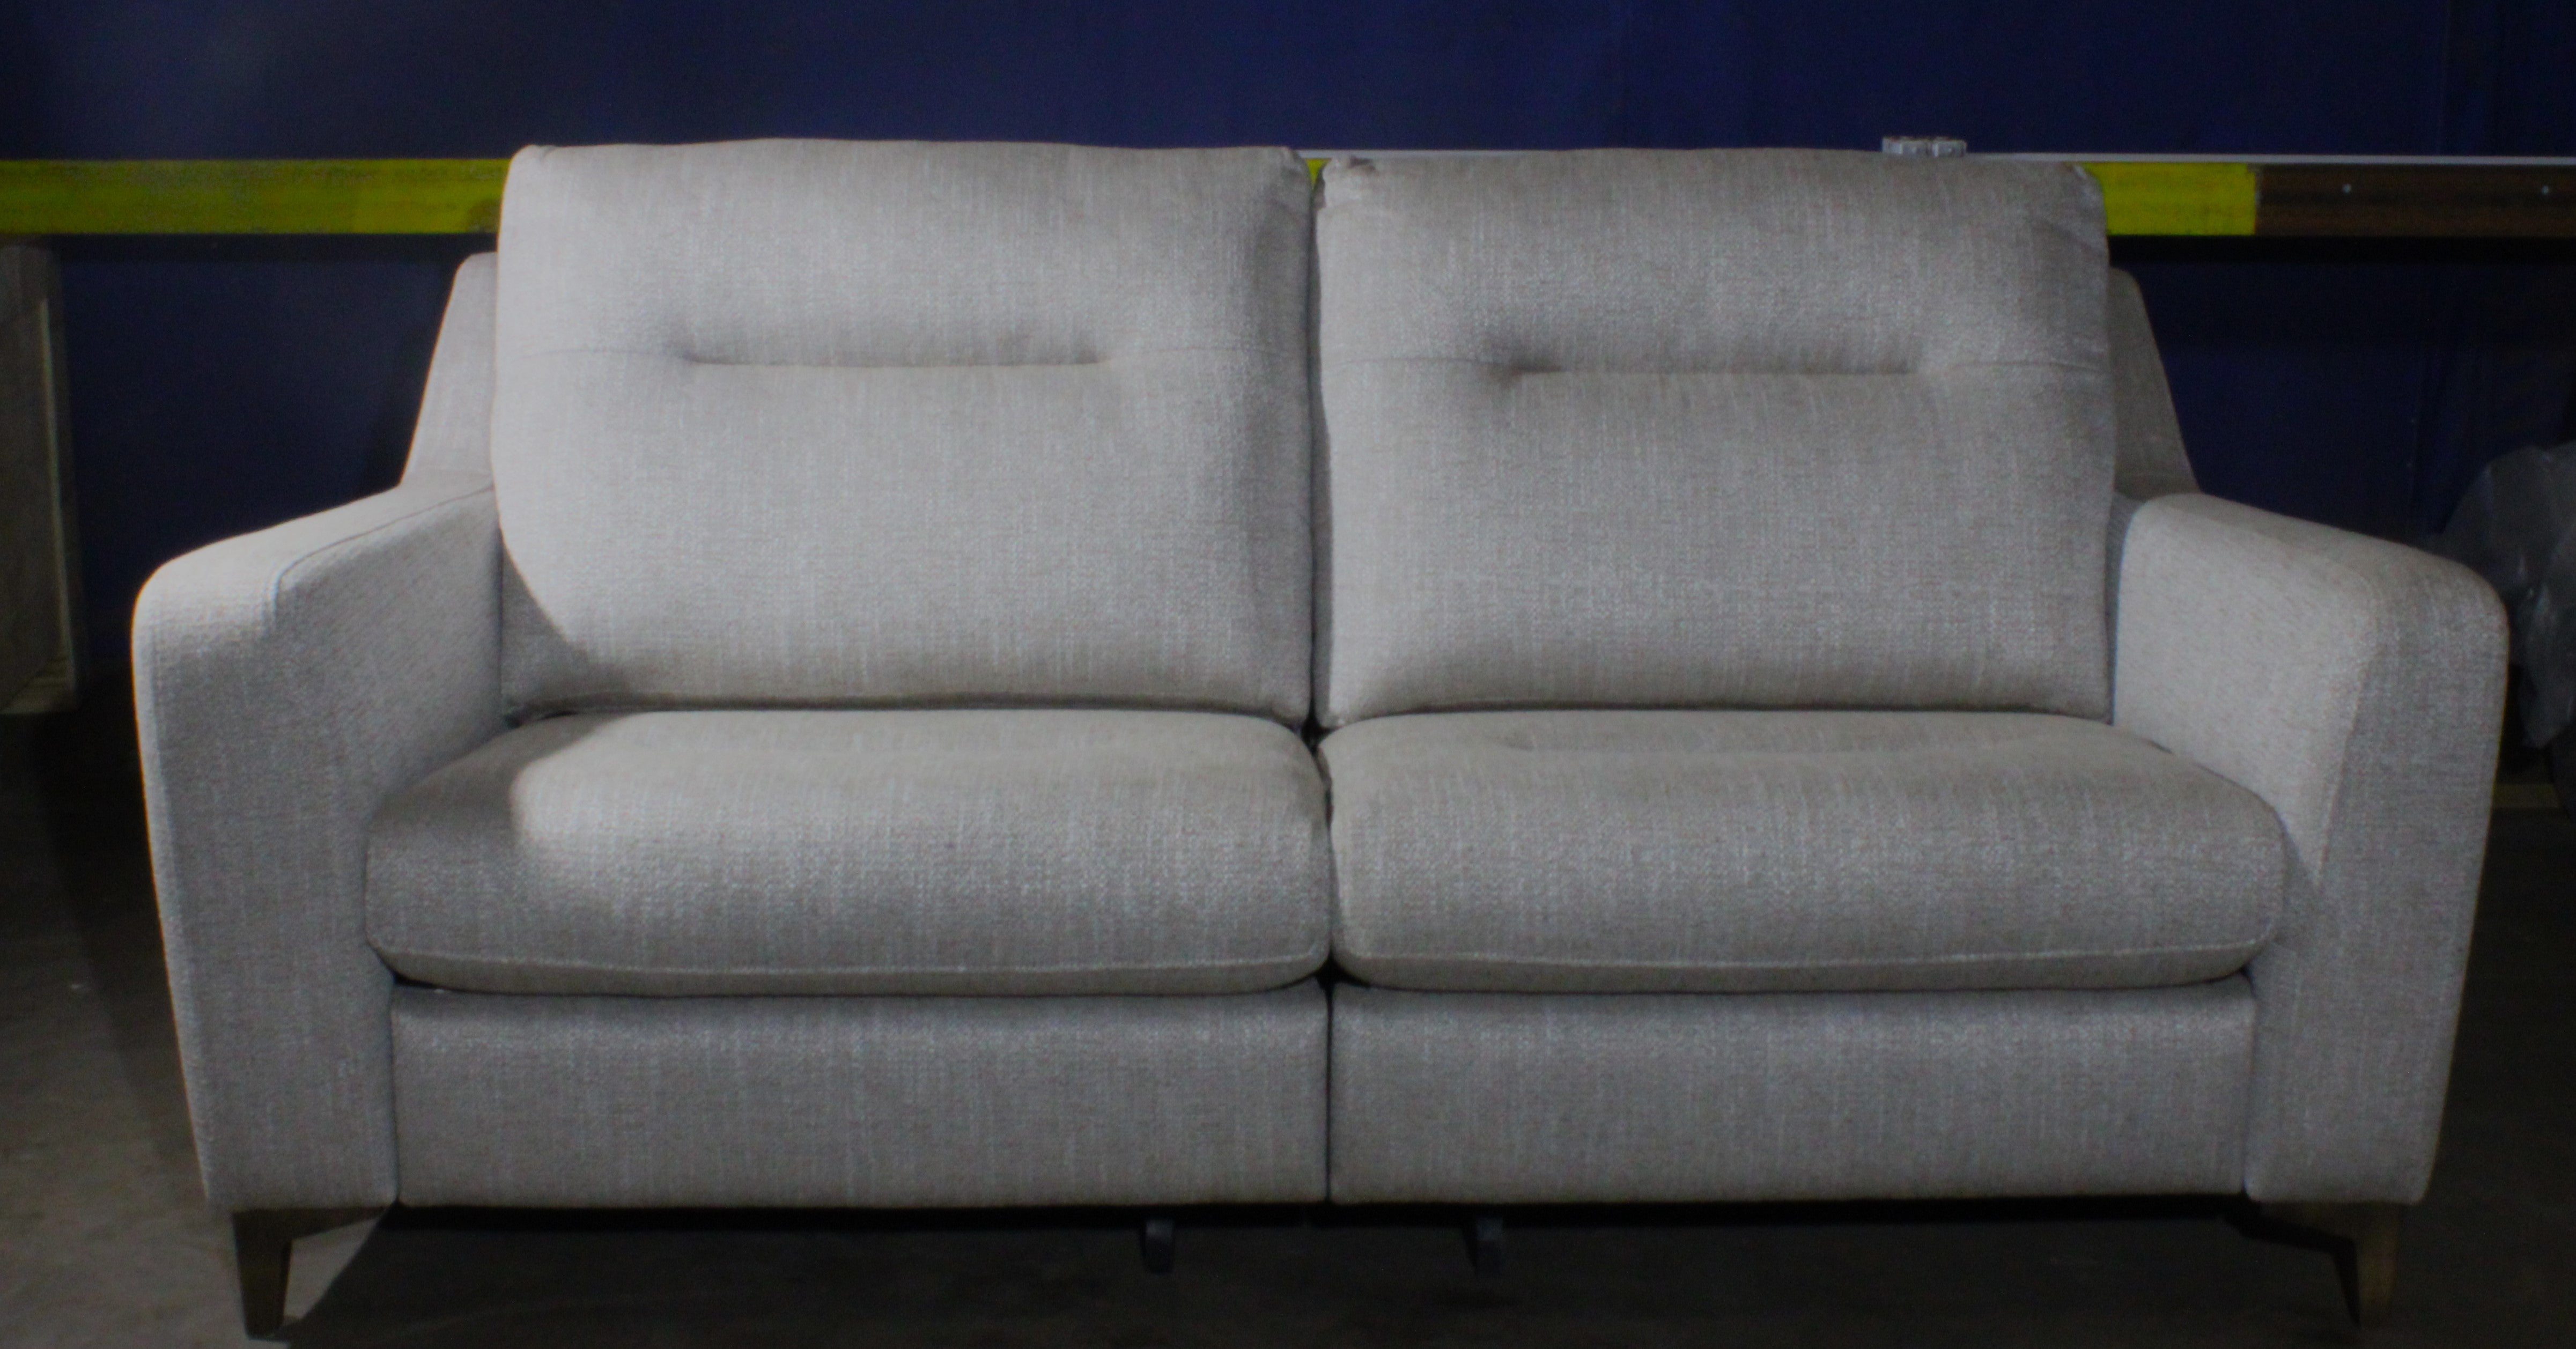 G-Plan: Arlo 2 Seater Sofa - Grey / Fabric - Manufacturer Return